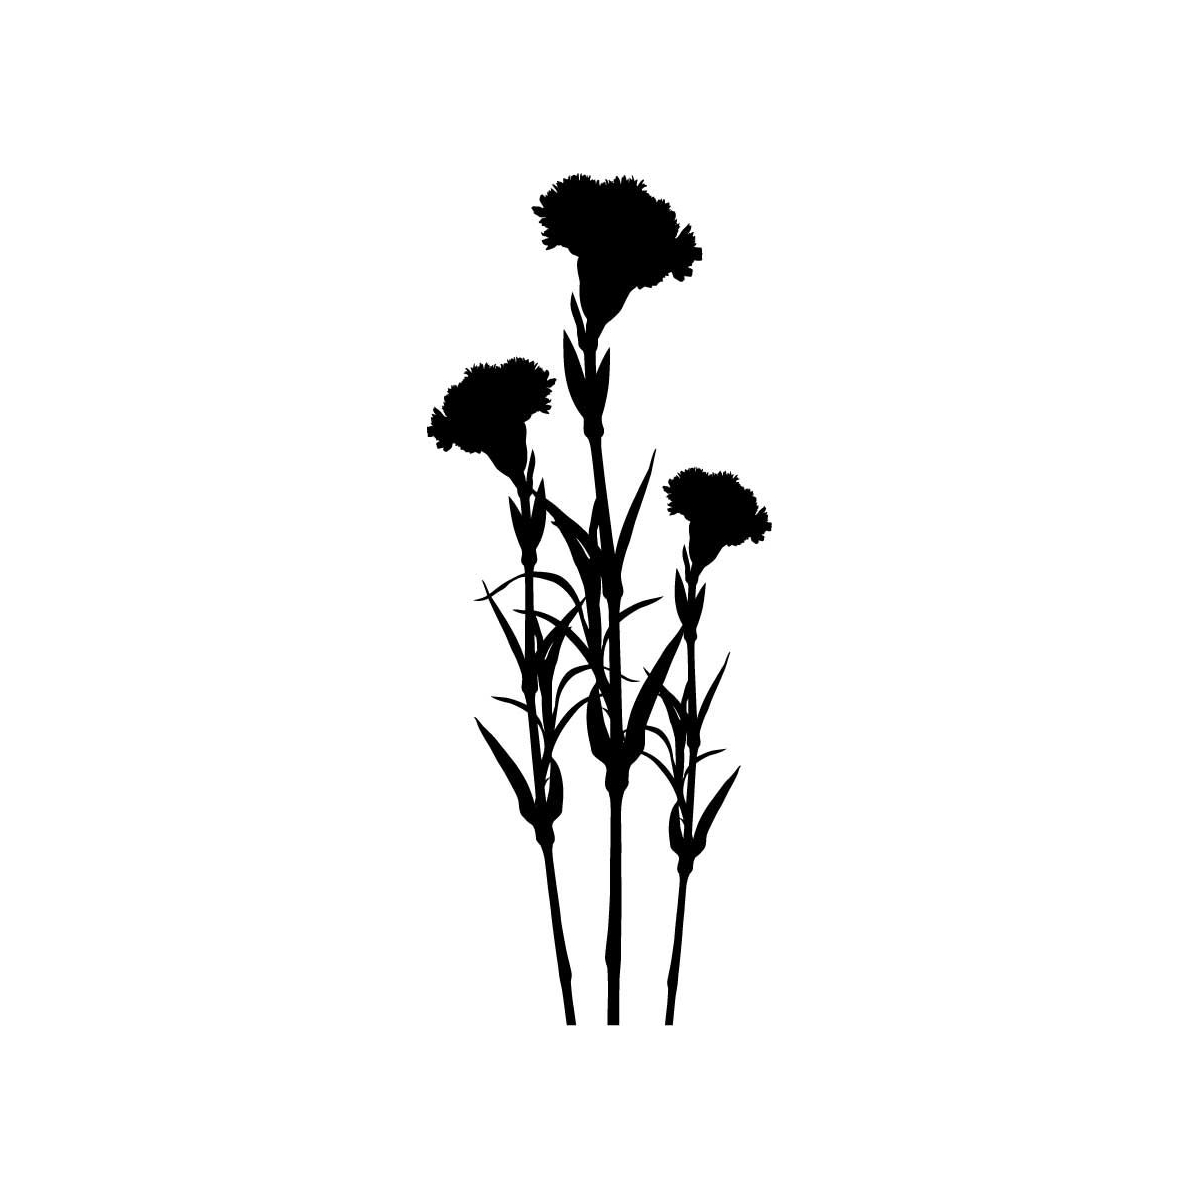 Images For > Carnation Flower Designs